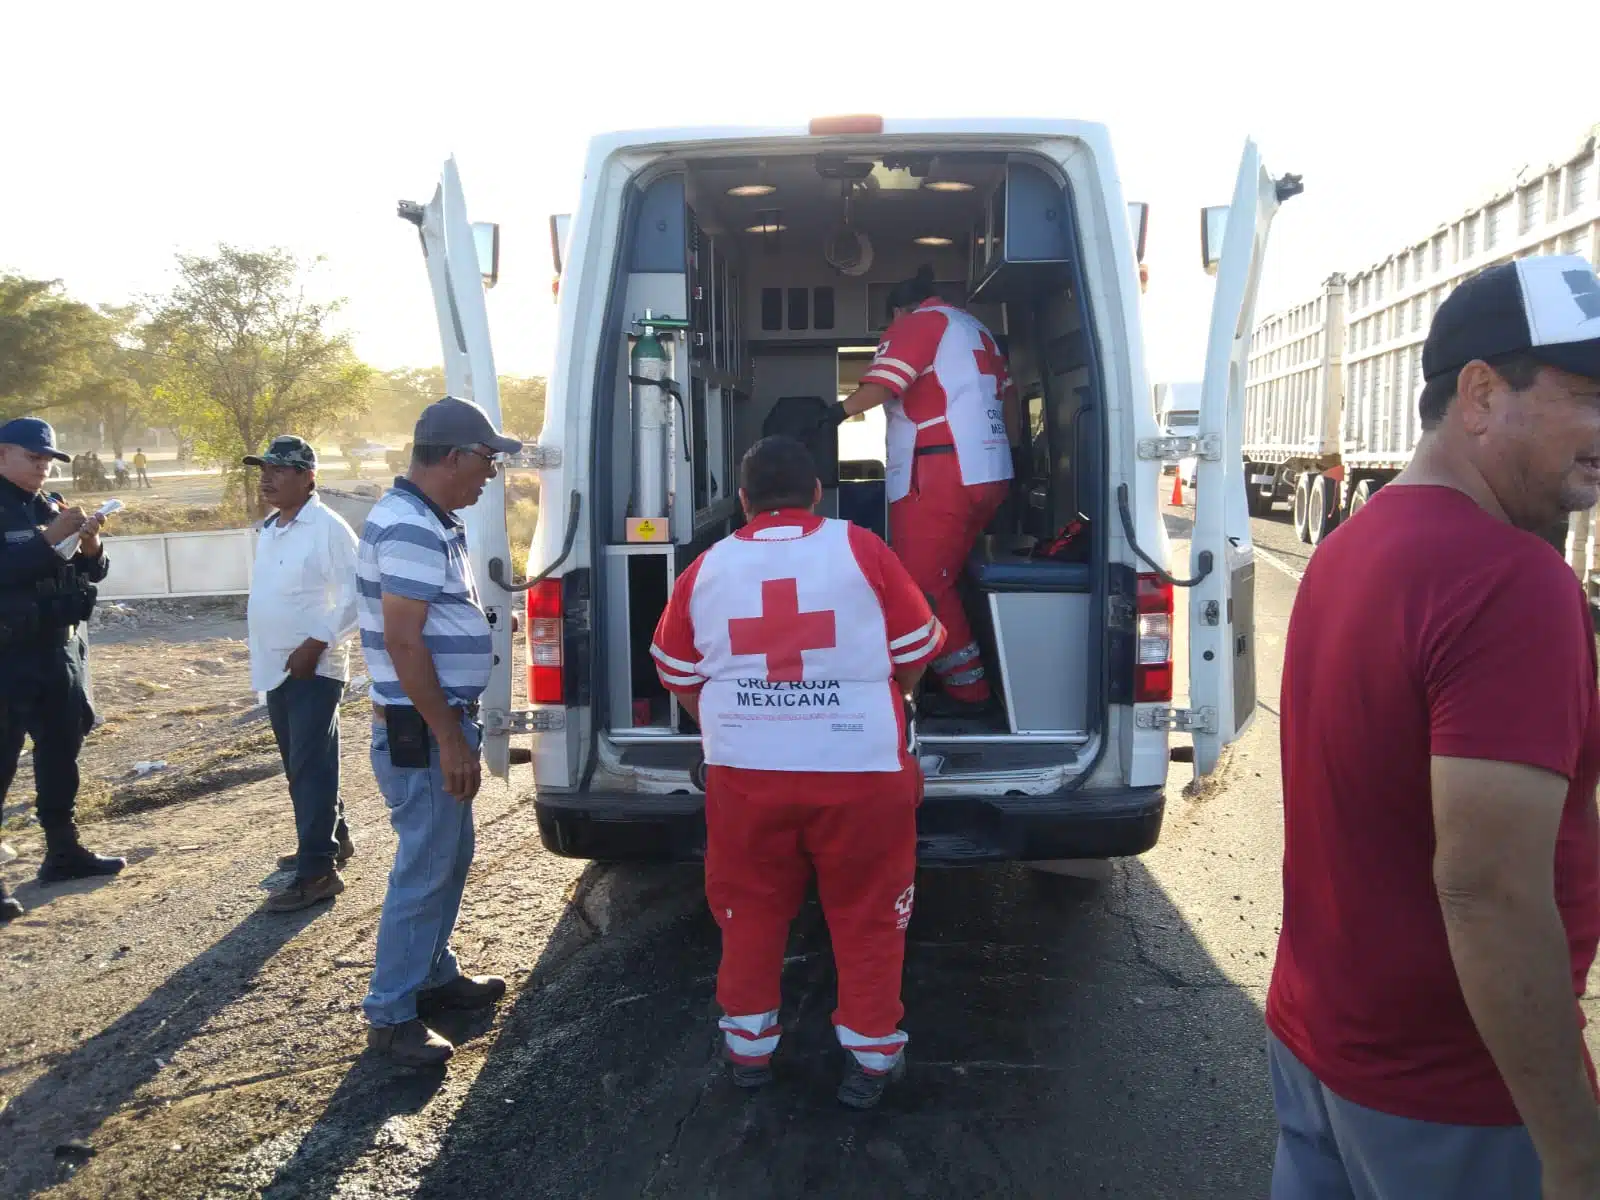 Paramédicos de Cruz Roja auxiliando a la persona lesionada